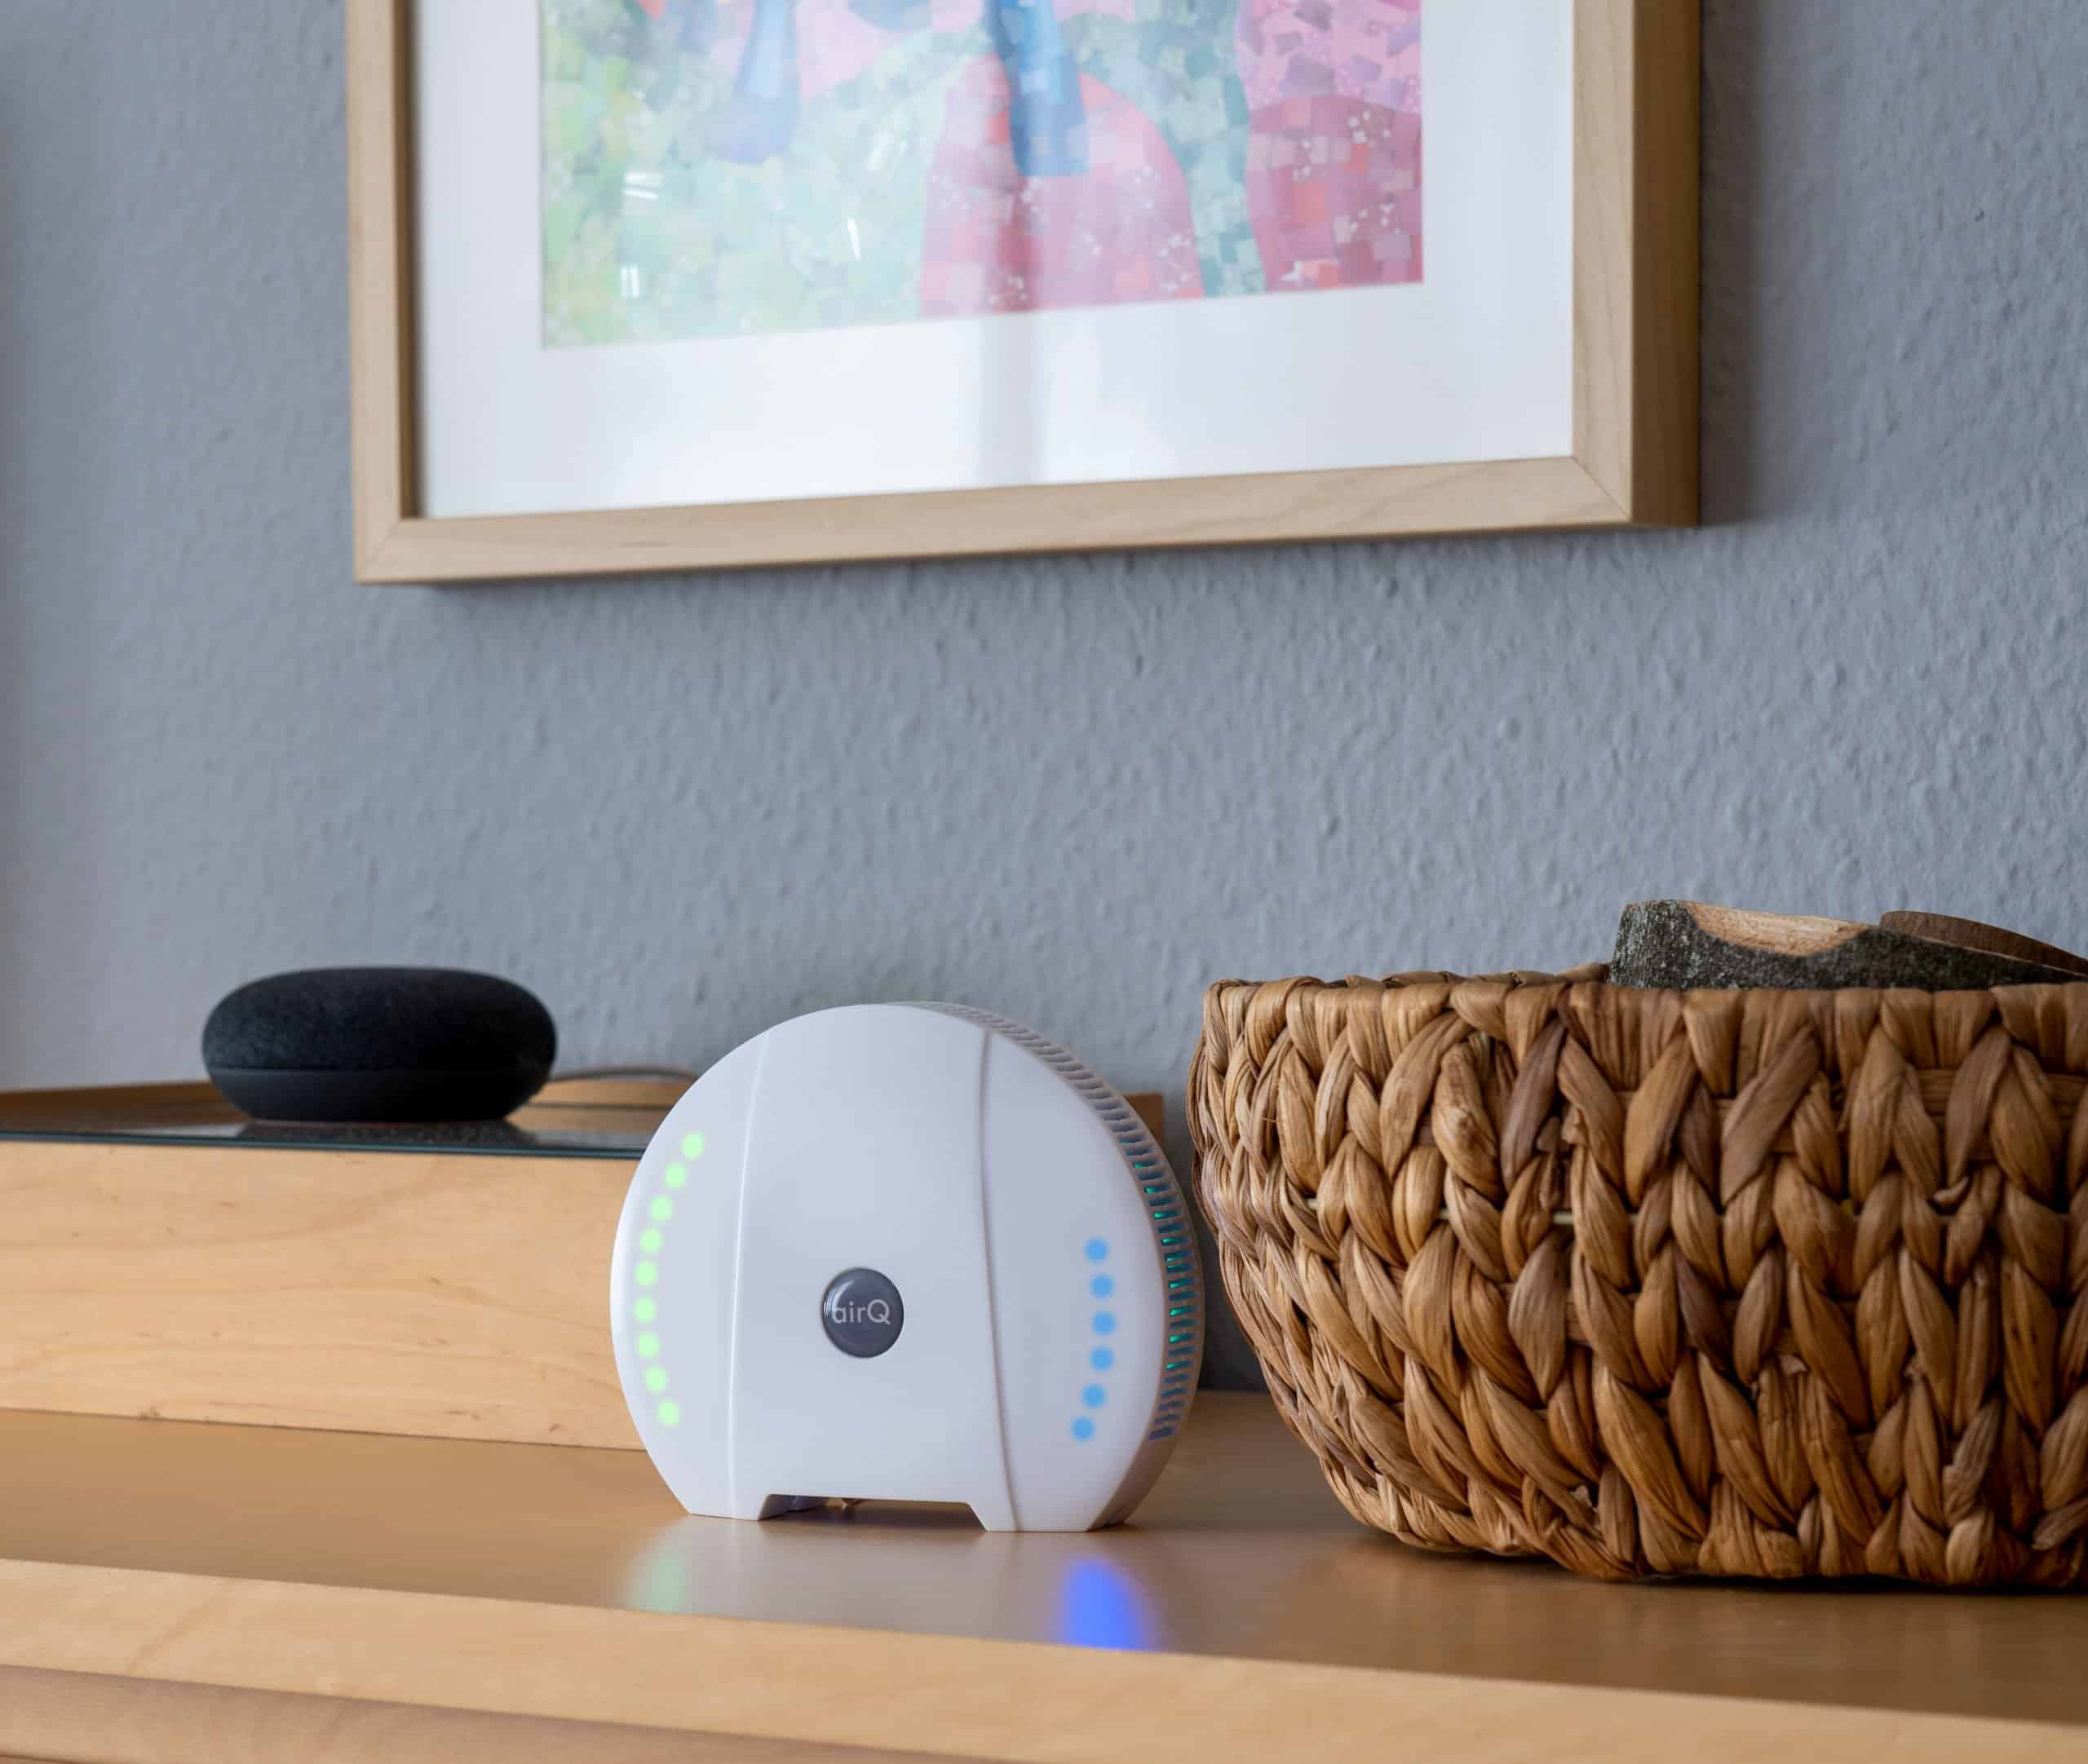 Luftsensor air-Q im Test: die Wundernase für Euer Smart Home